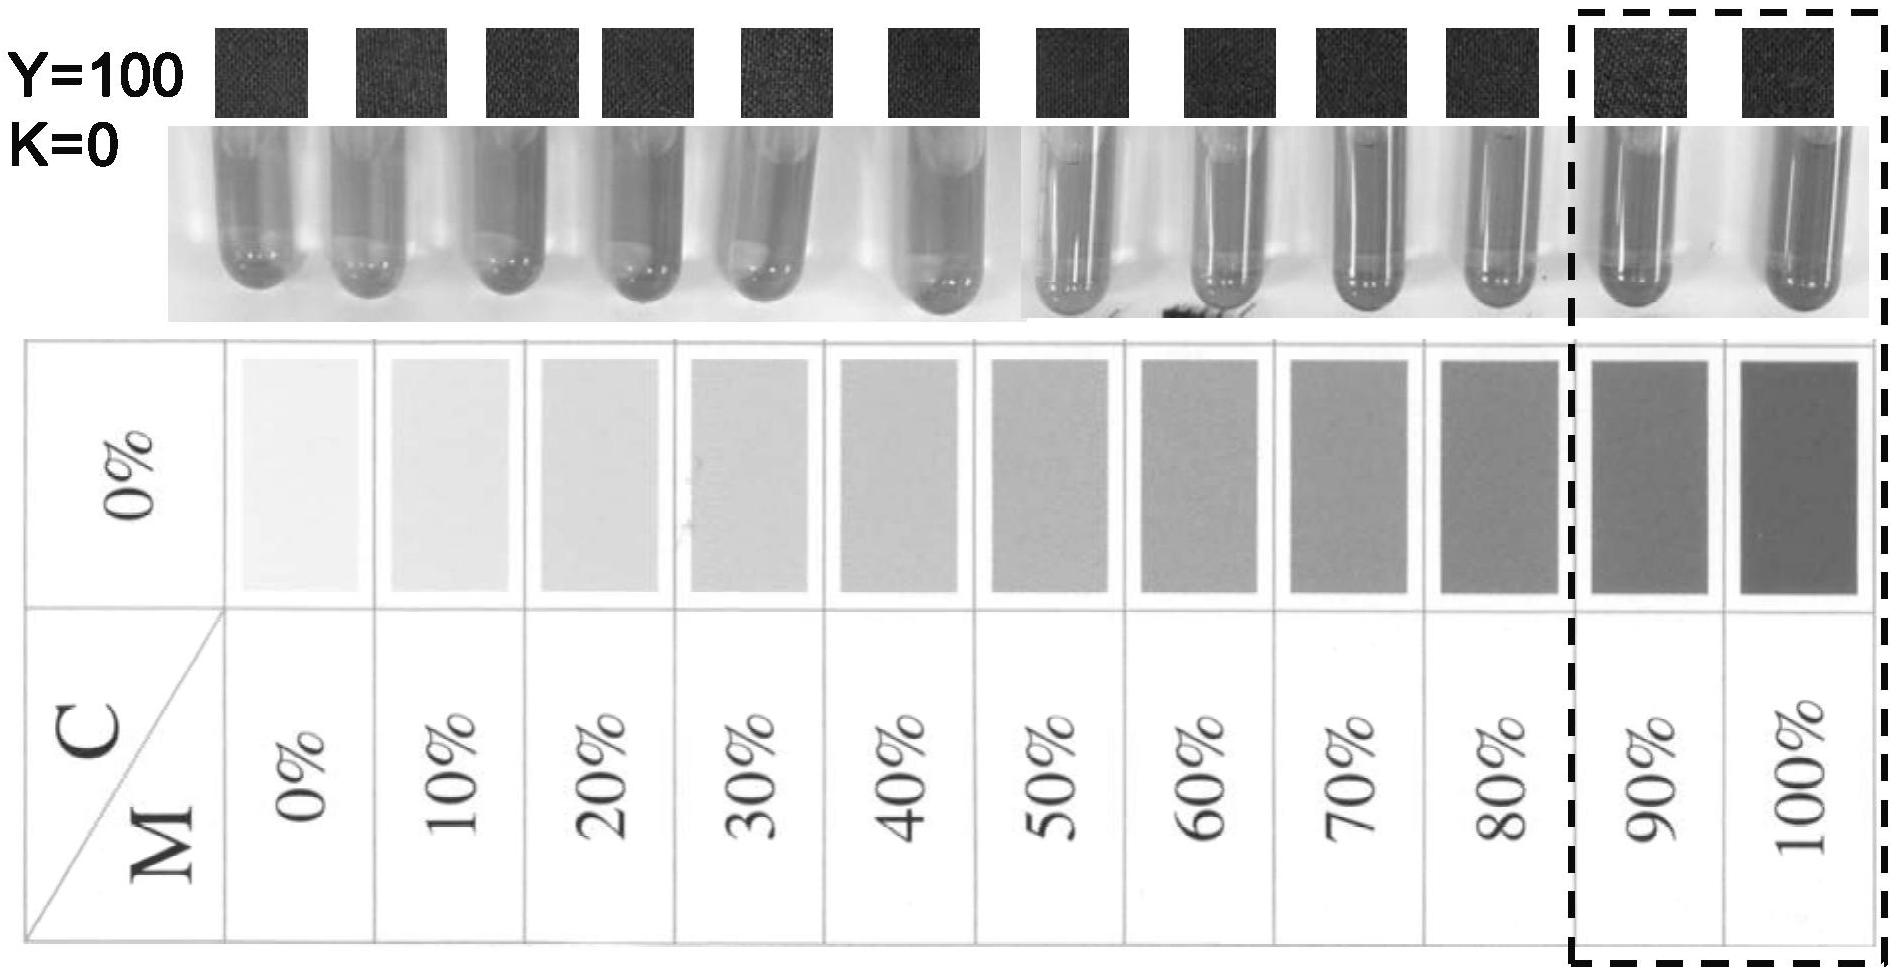 通过亚铁离子的显色方法获得显色液,根据显色液色度与cmyk标准色卡比